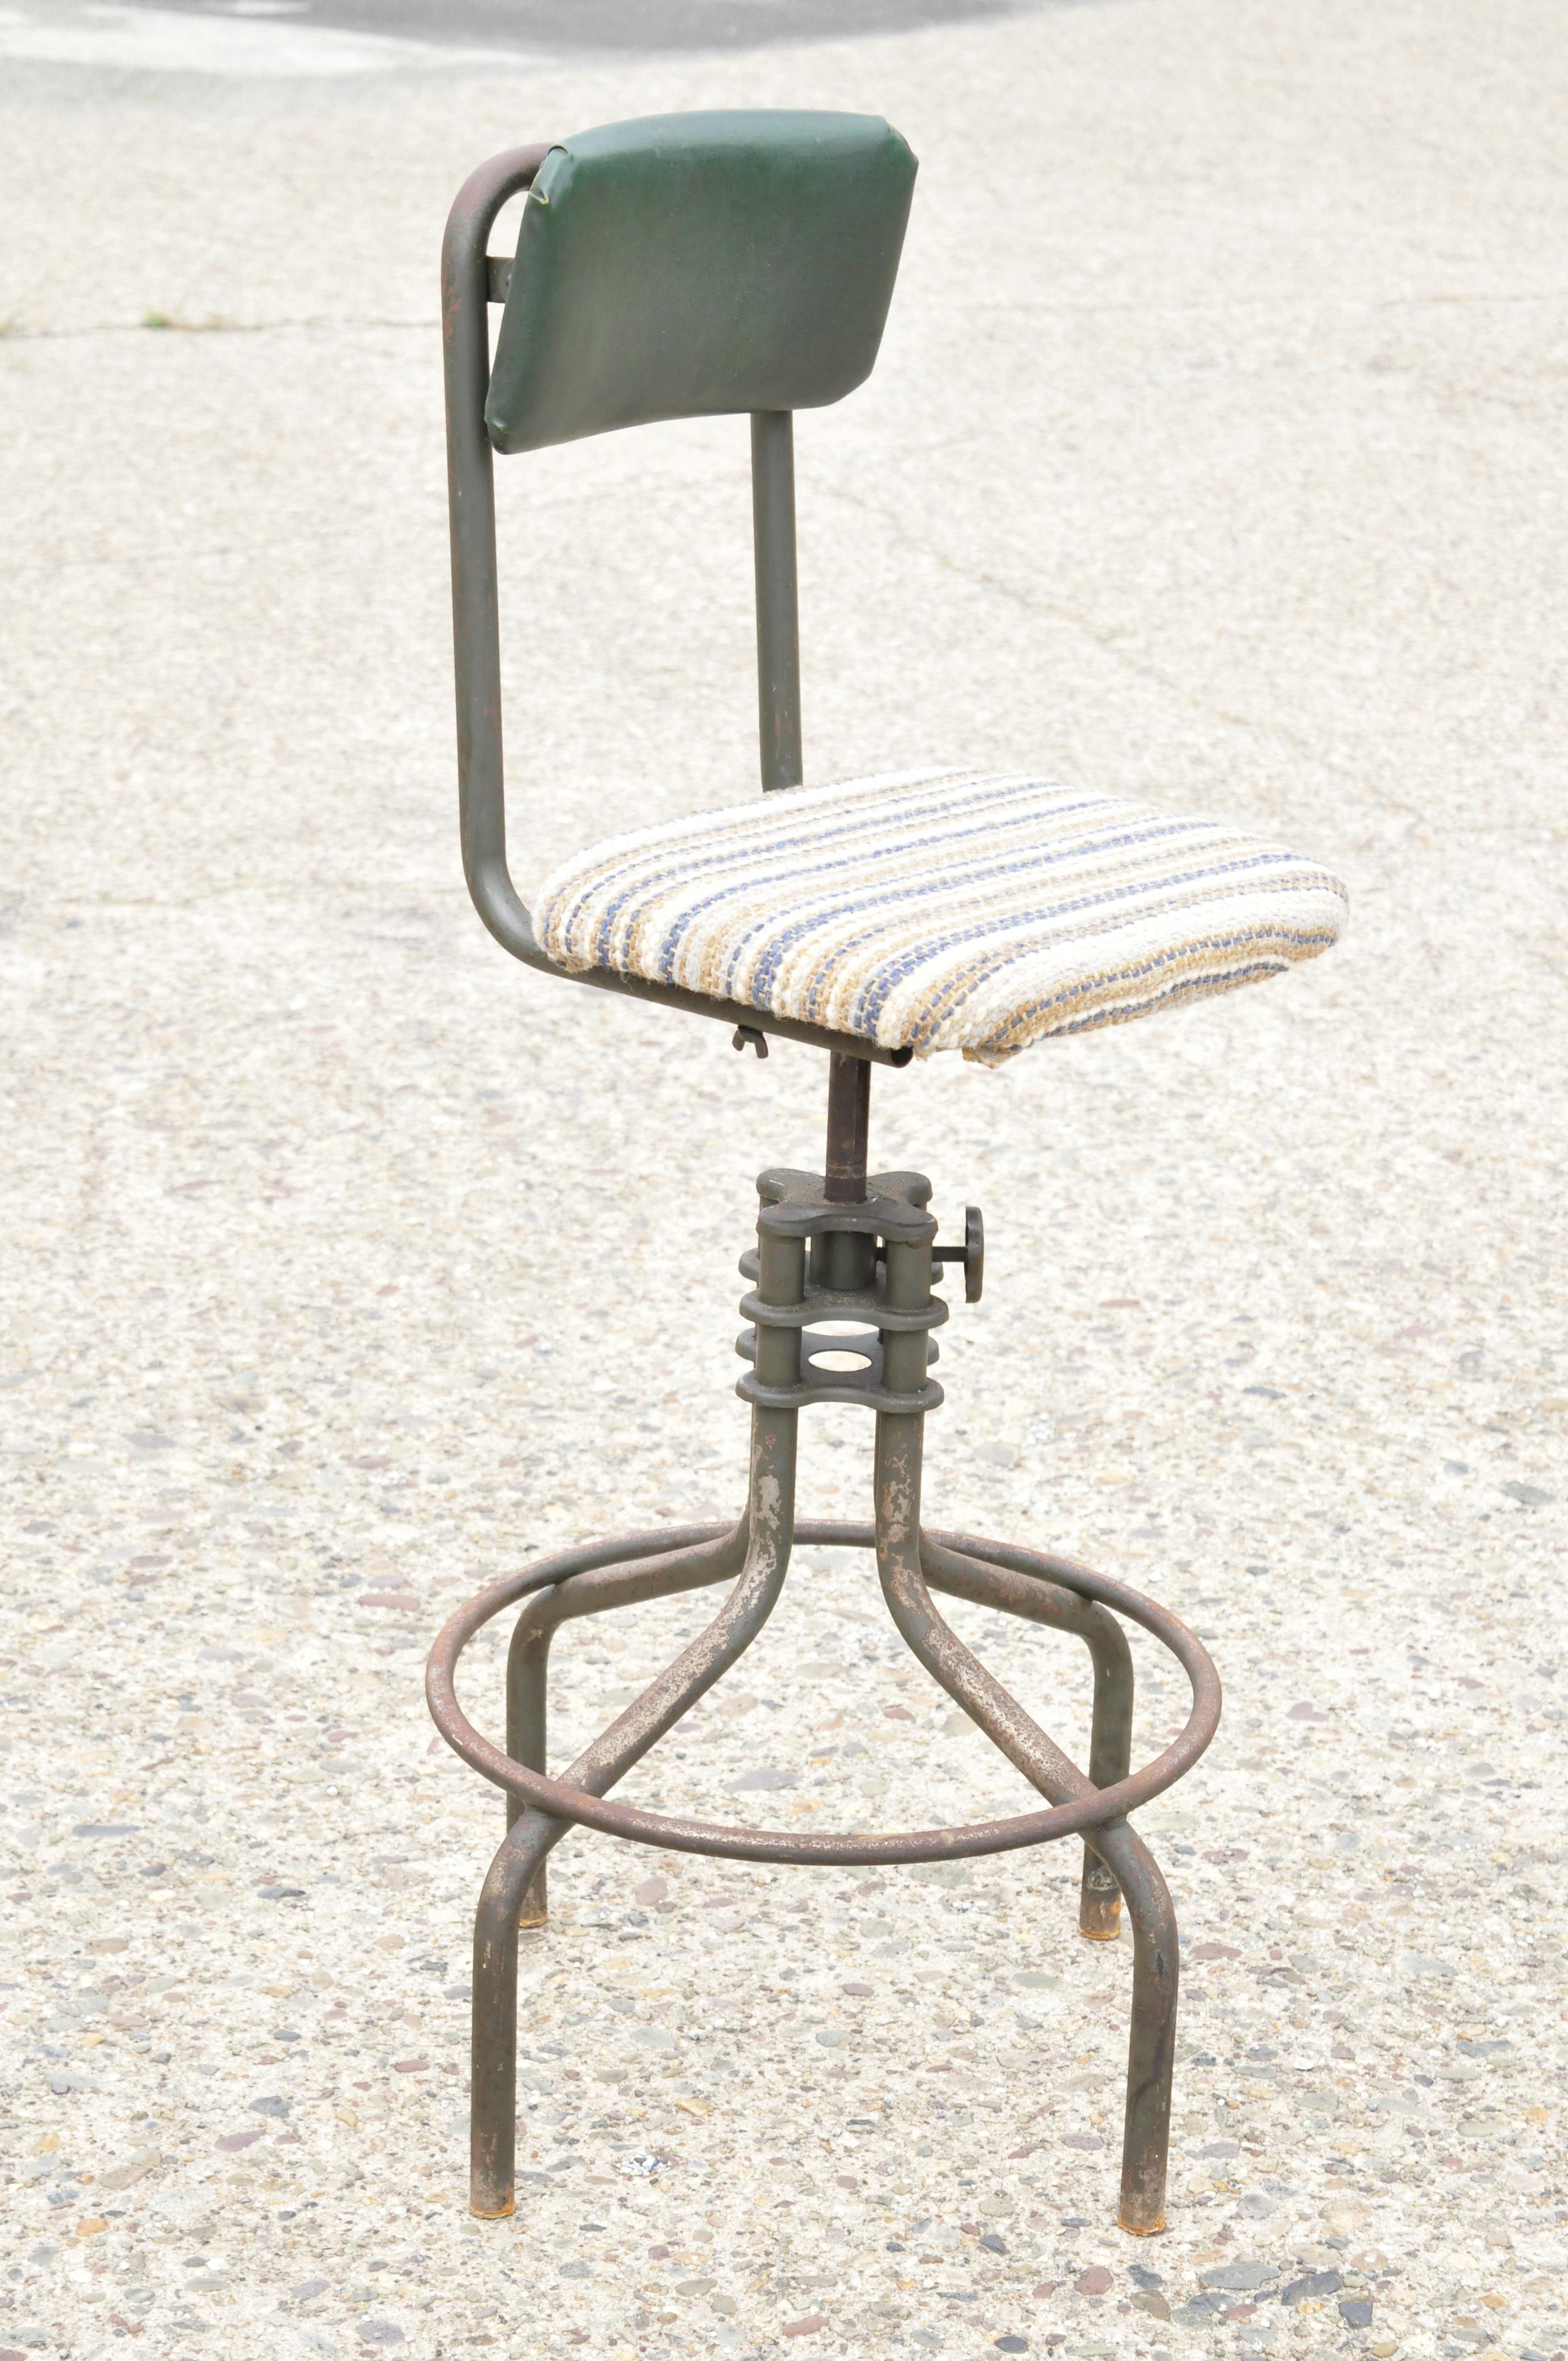 Antique American Industrial Adjustable Steel Metal Drafting Stool Work Chair 6